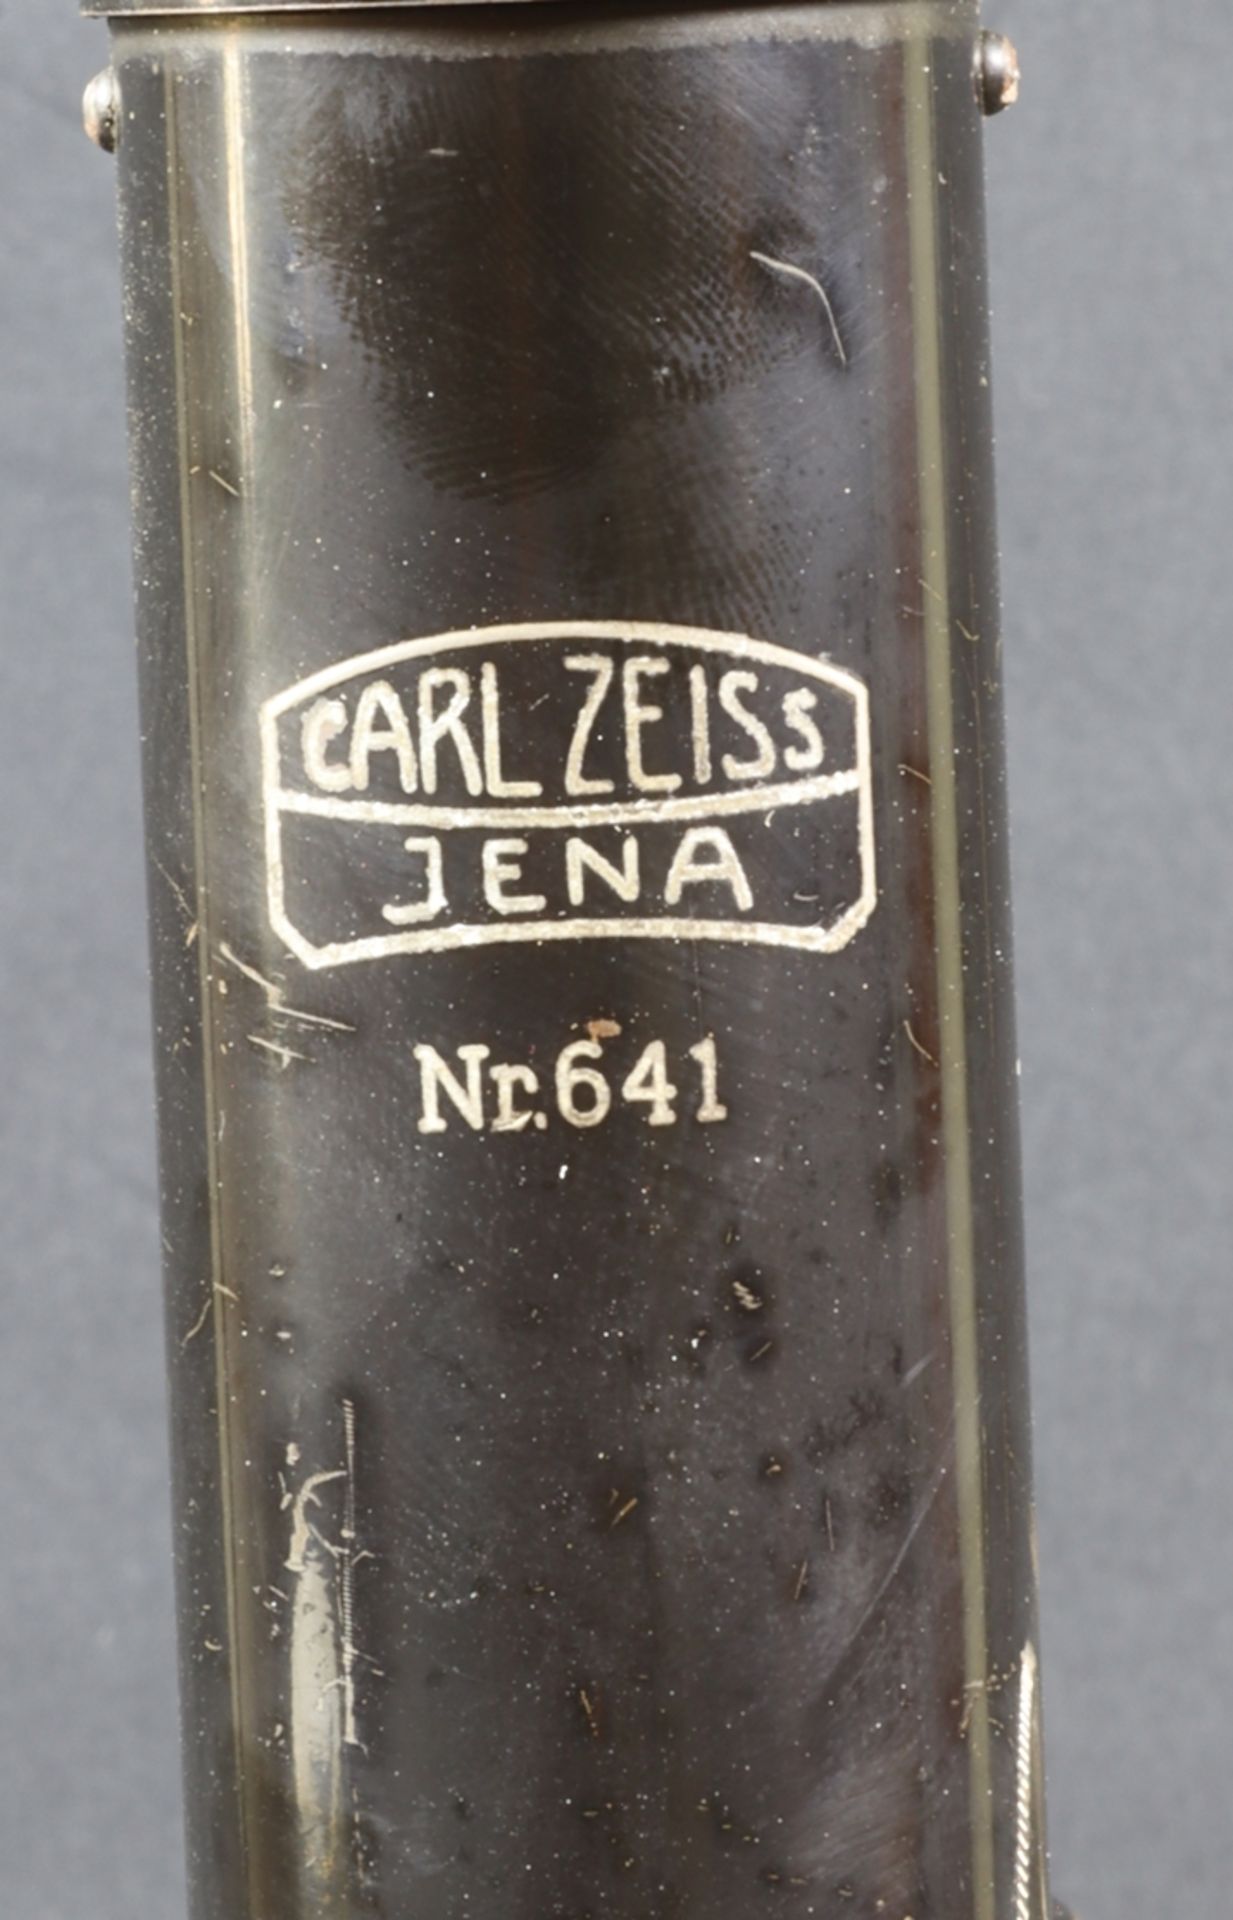 Technisches Vermessungsmikroskop/ No 641 - Carl Zeiss Jena, 30er Jahre des 20.Jh., Deutsch - Bild 2 aus 2